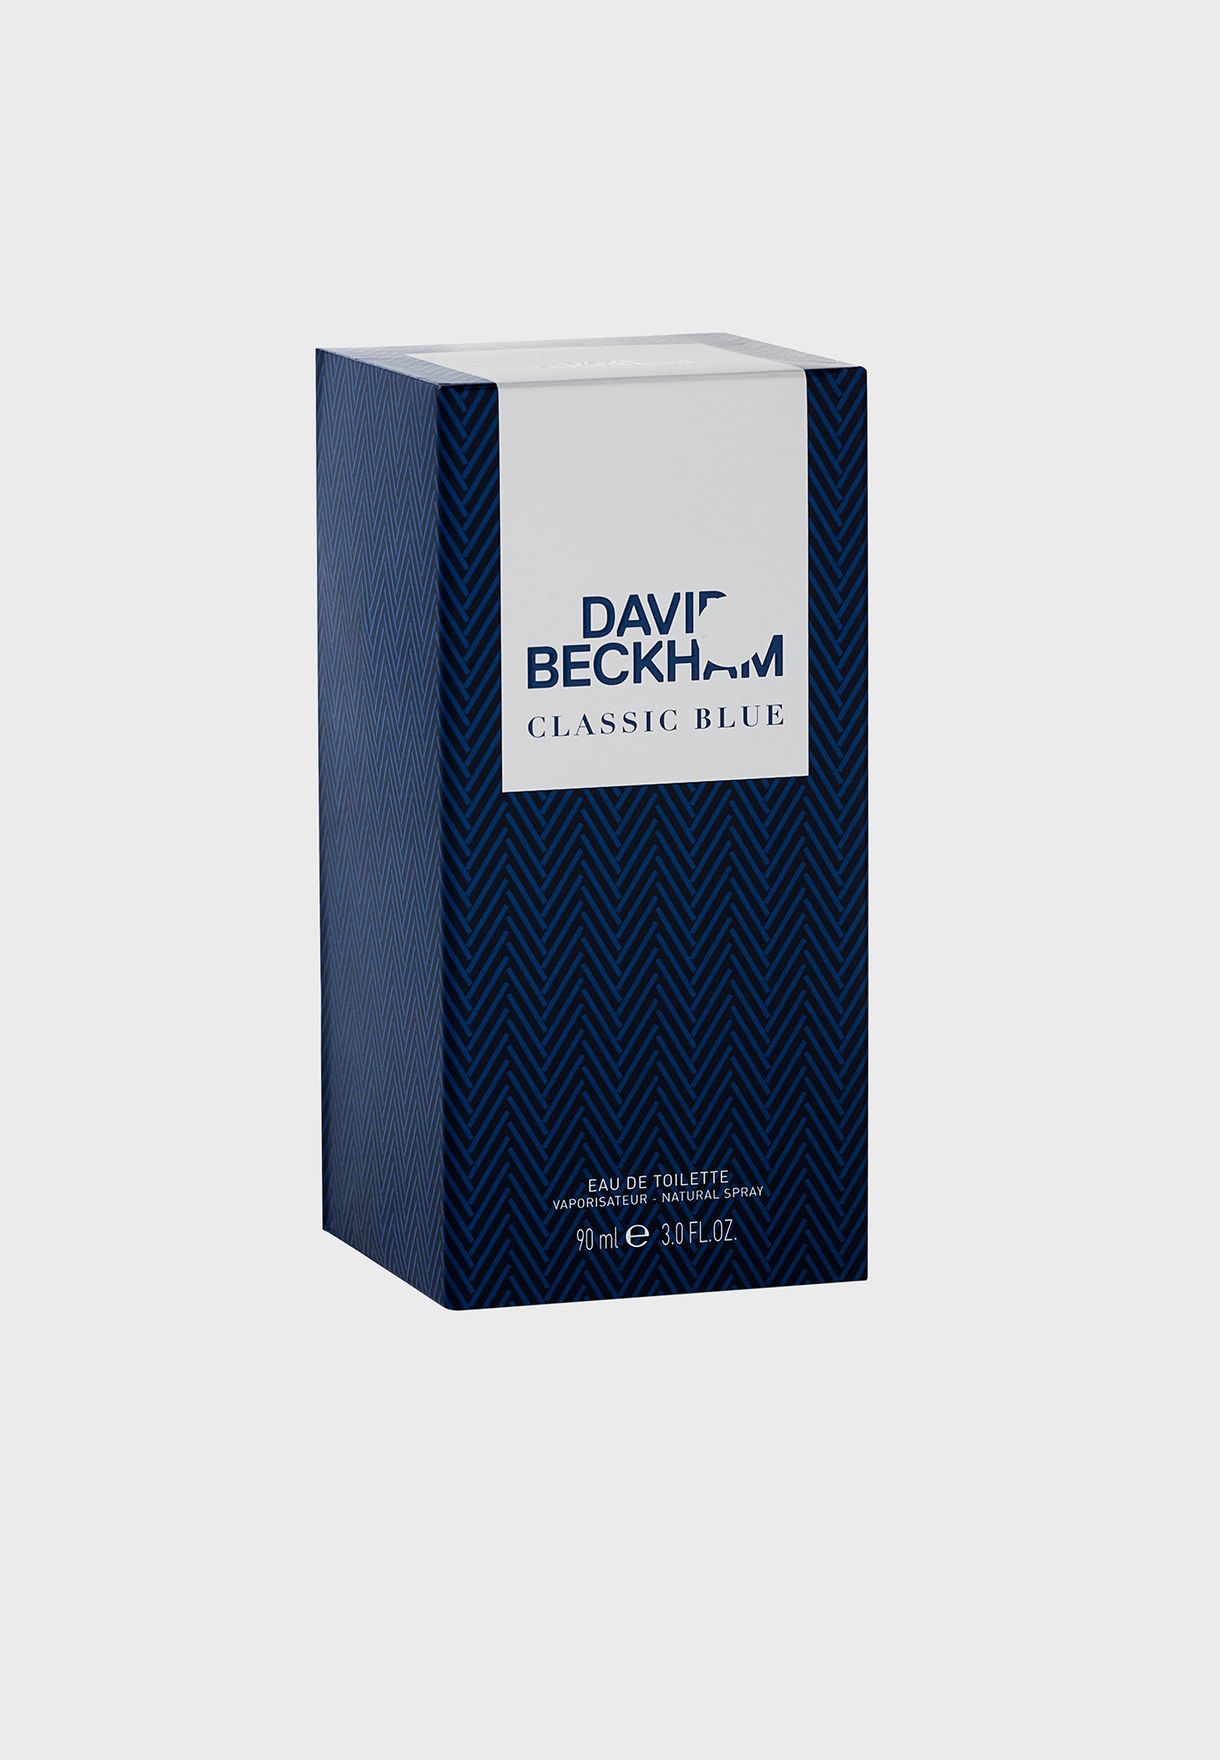 David Beckham Classic Blue, Eau de Toilette for Him, 90 ml